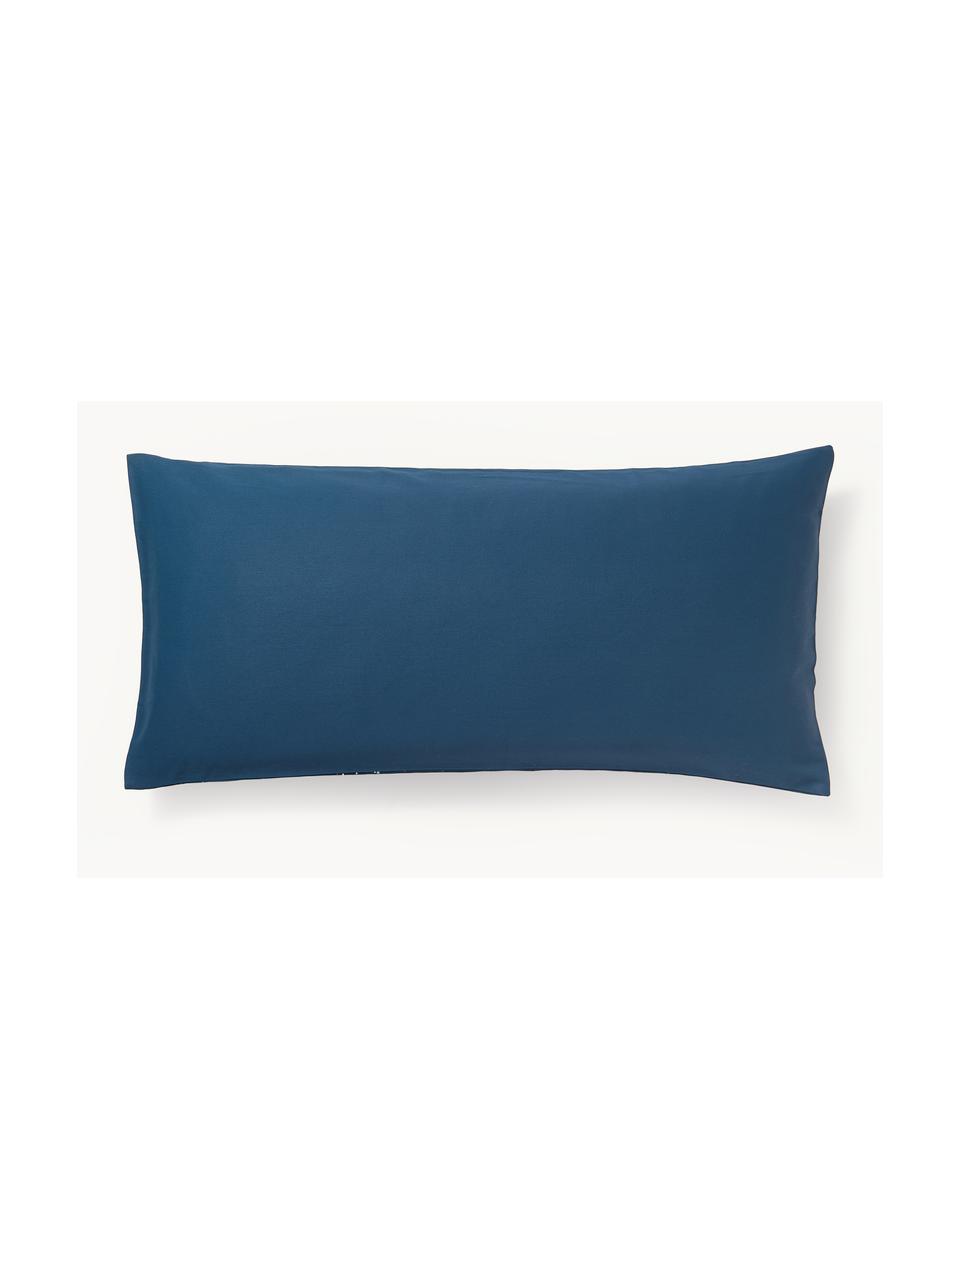 Poszewka na poduszkę z satyny bawełnianej Yuma, Ciemny niebieski, S 40 x D 80 cm